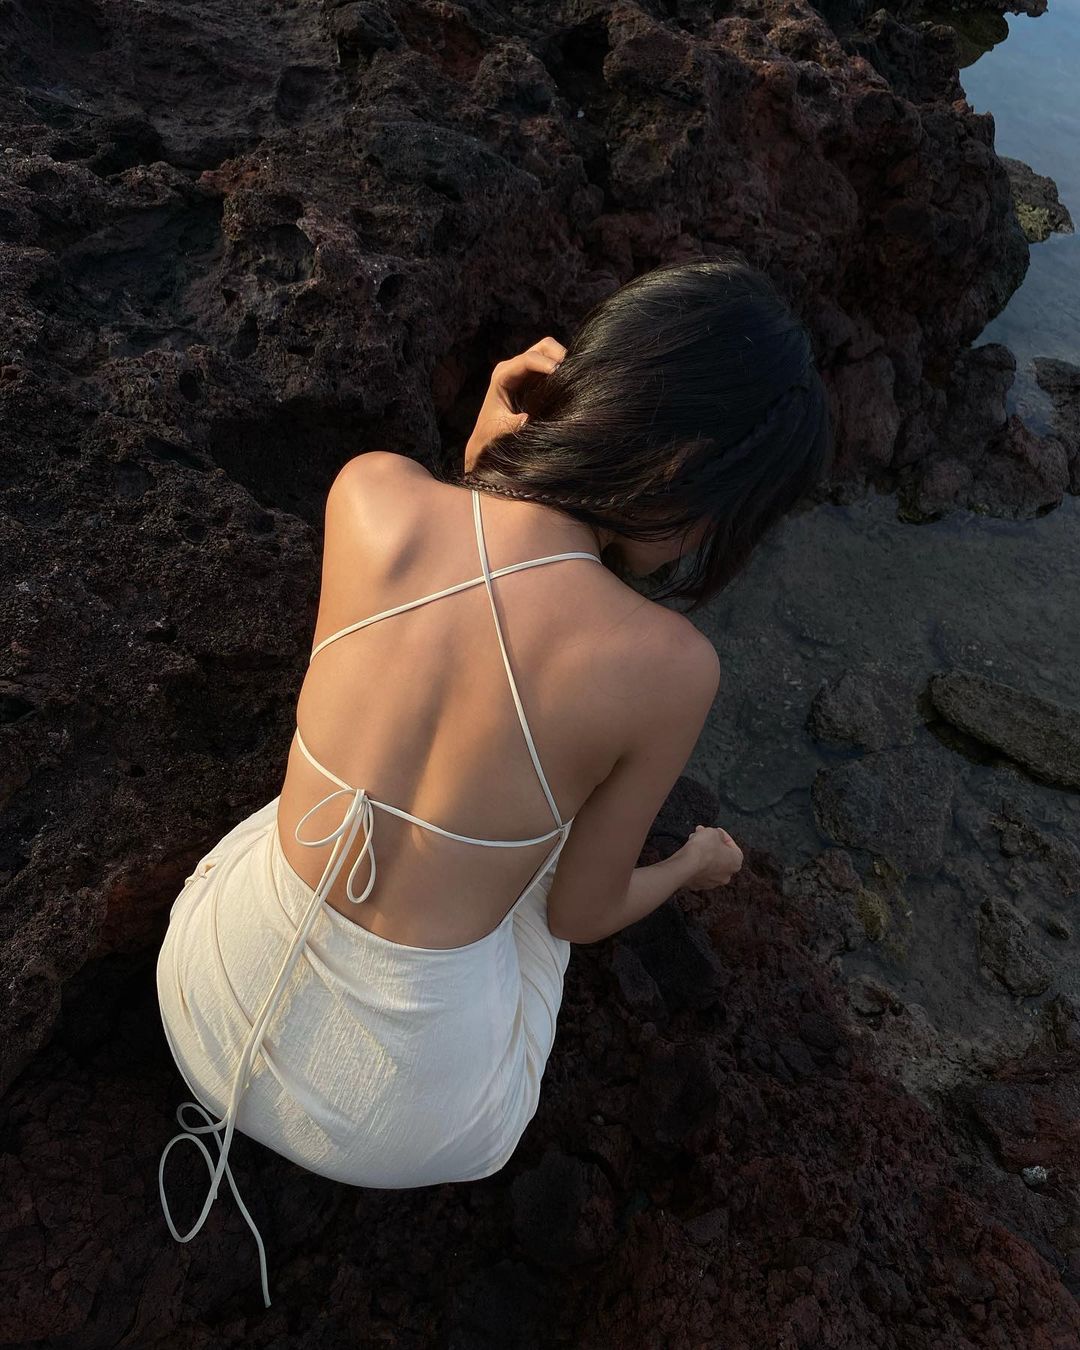 chong nang - Get Ready With ELLE – “Túi làm đẹp thần kỳ” không thể thiếu khi đi biển 